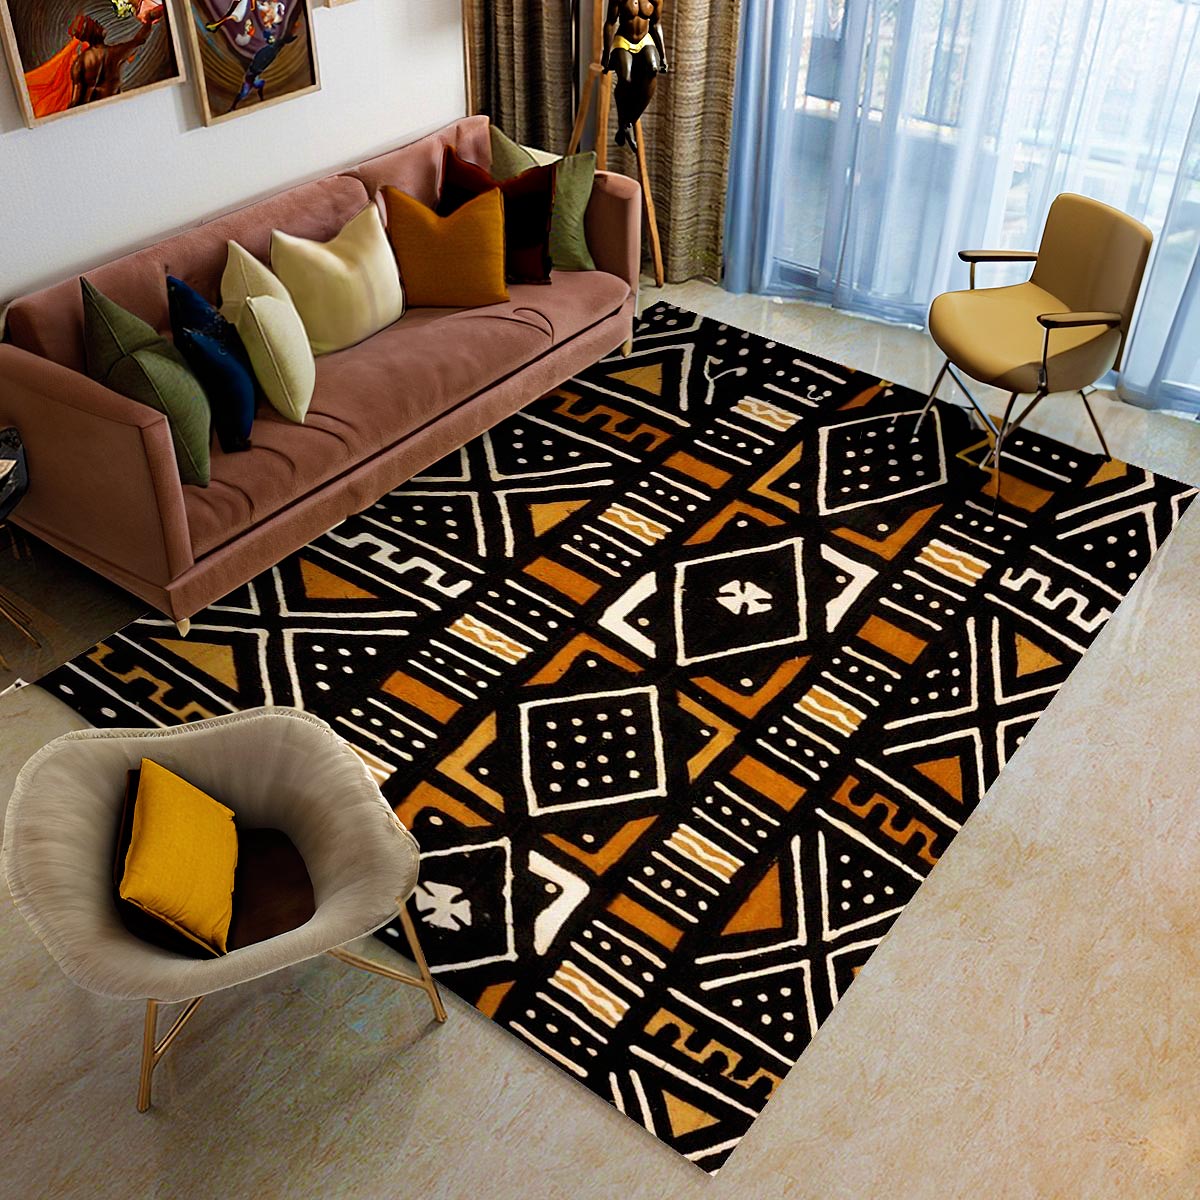 Mudcloth African Print Carpet - Exquisite Rug Design